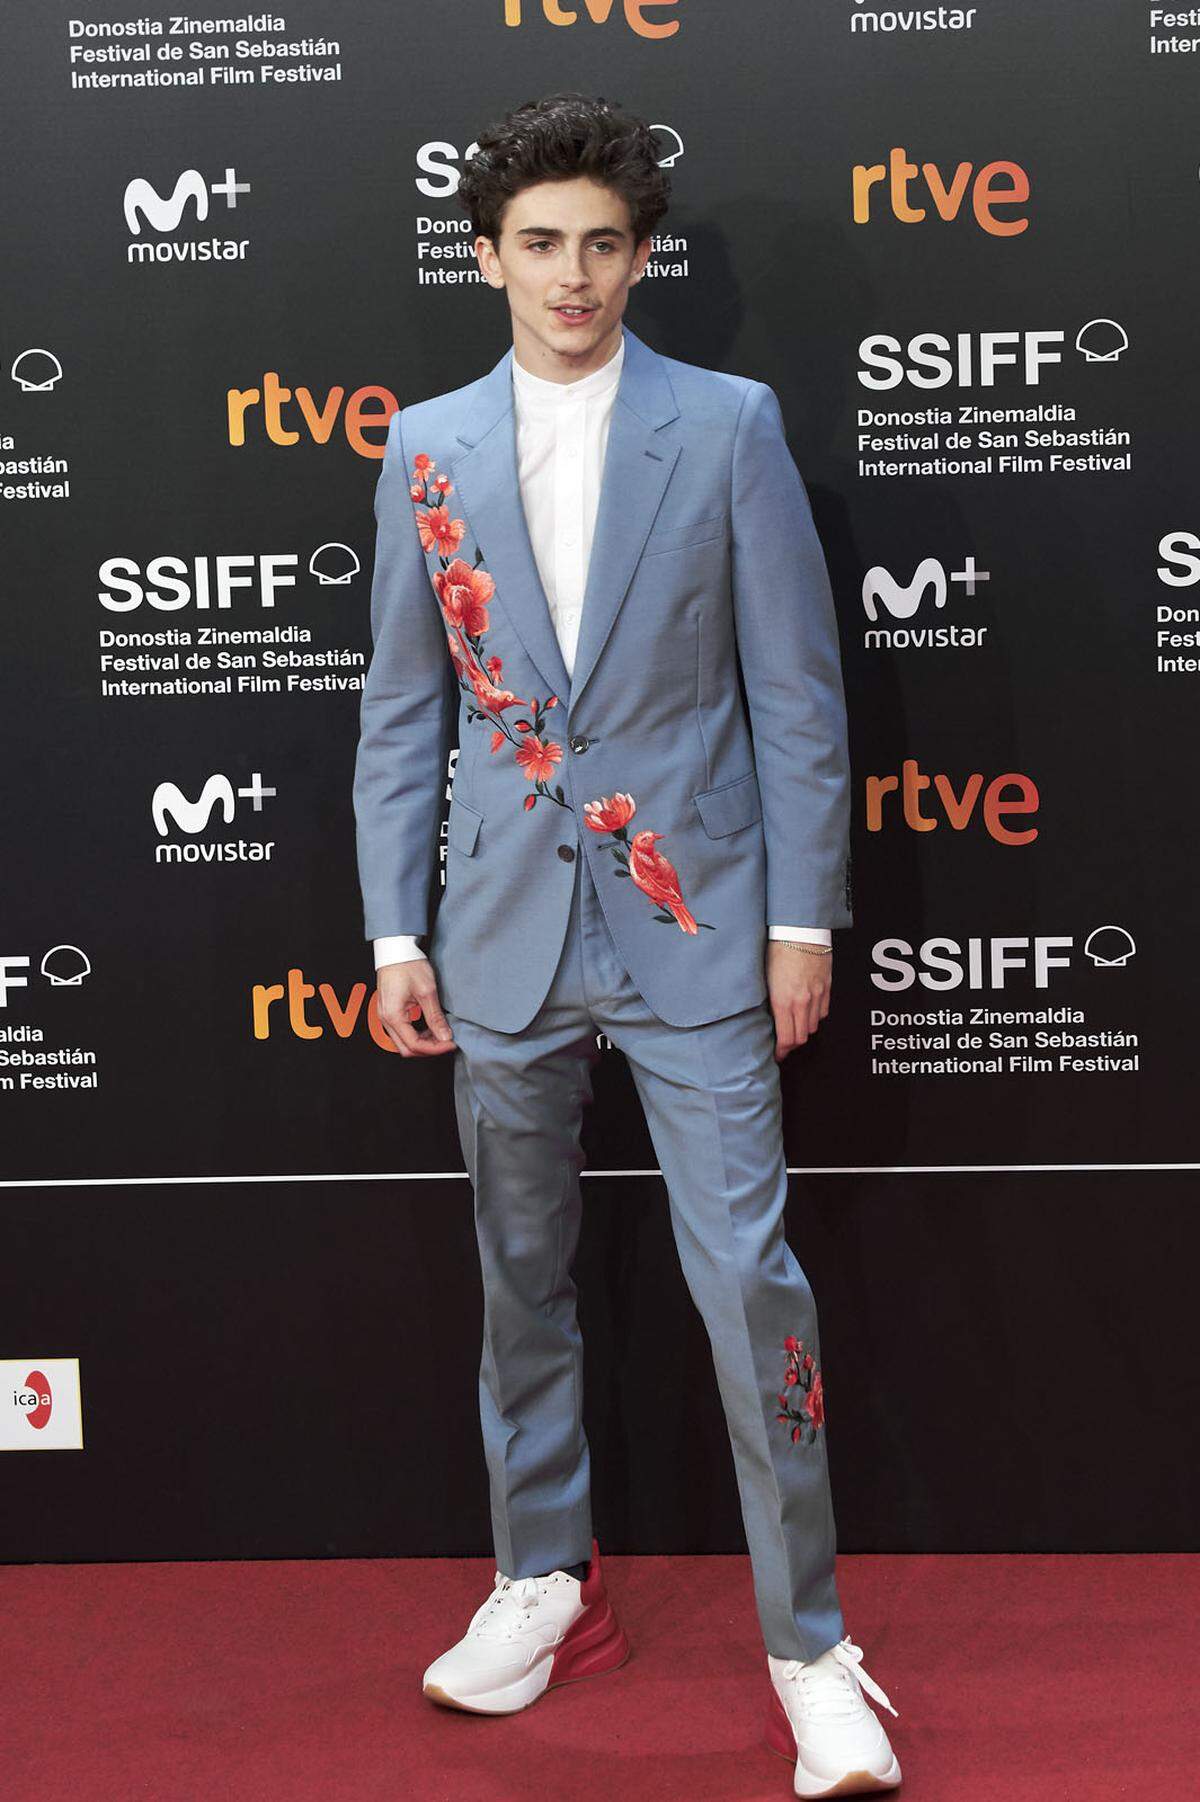 Der Schauspieler war mit gerade einmal 21 Jahren bereits für den Oscar nominiert. Auf dem roten Teppich fällt er durch seine modemutigen Anzüge auf.